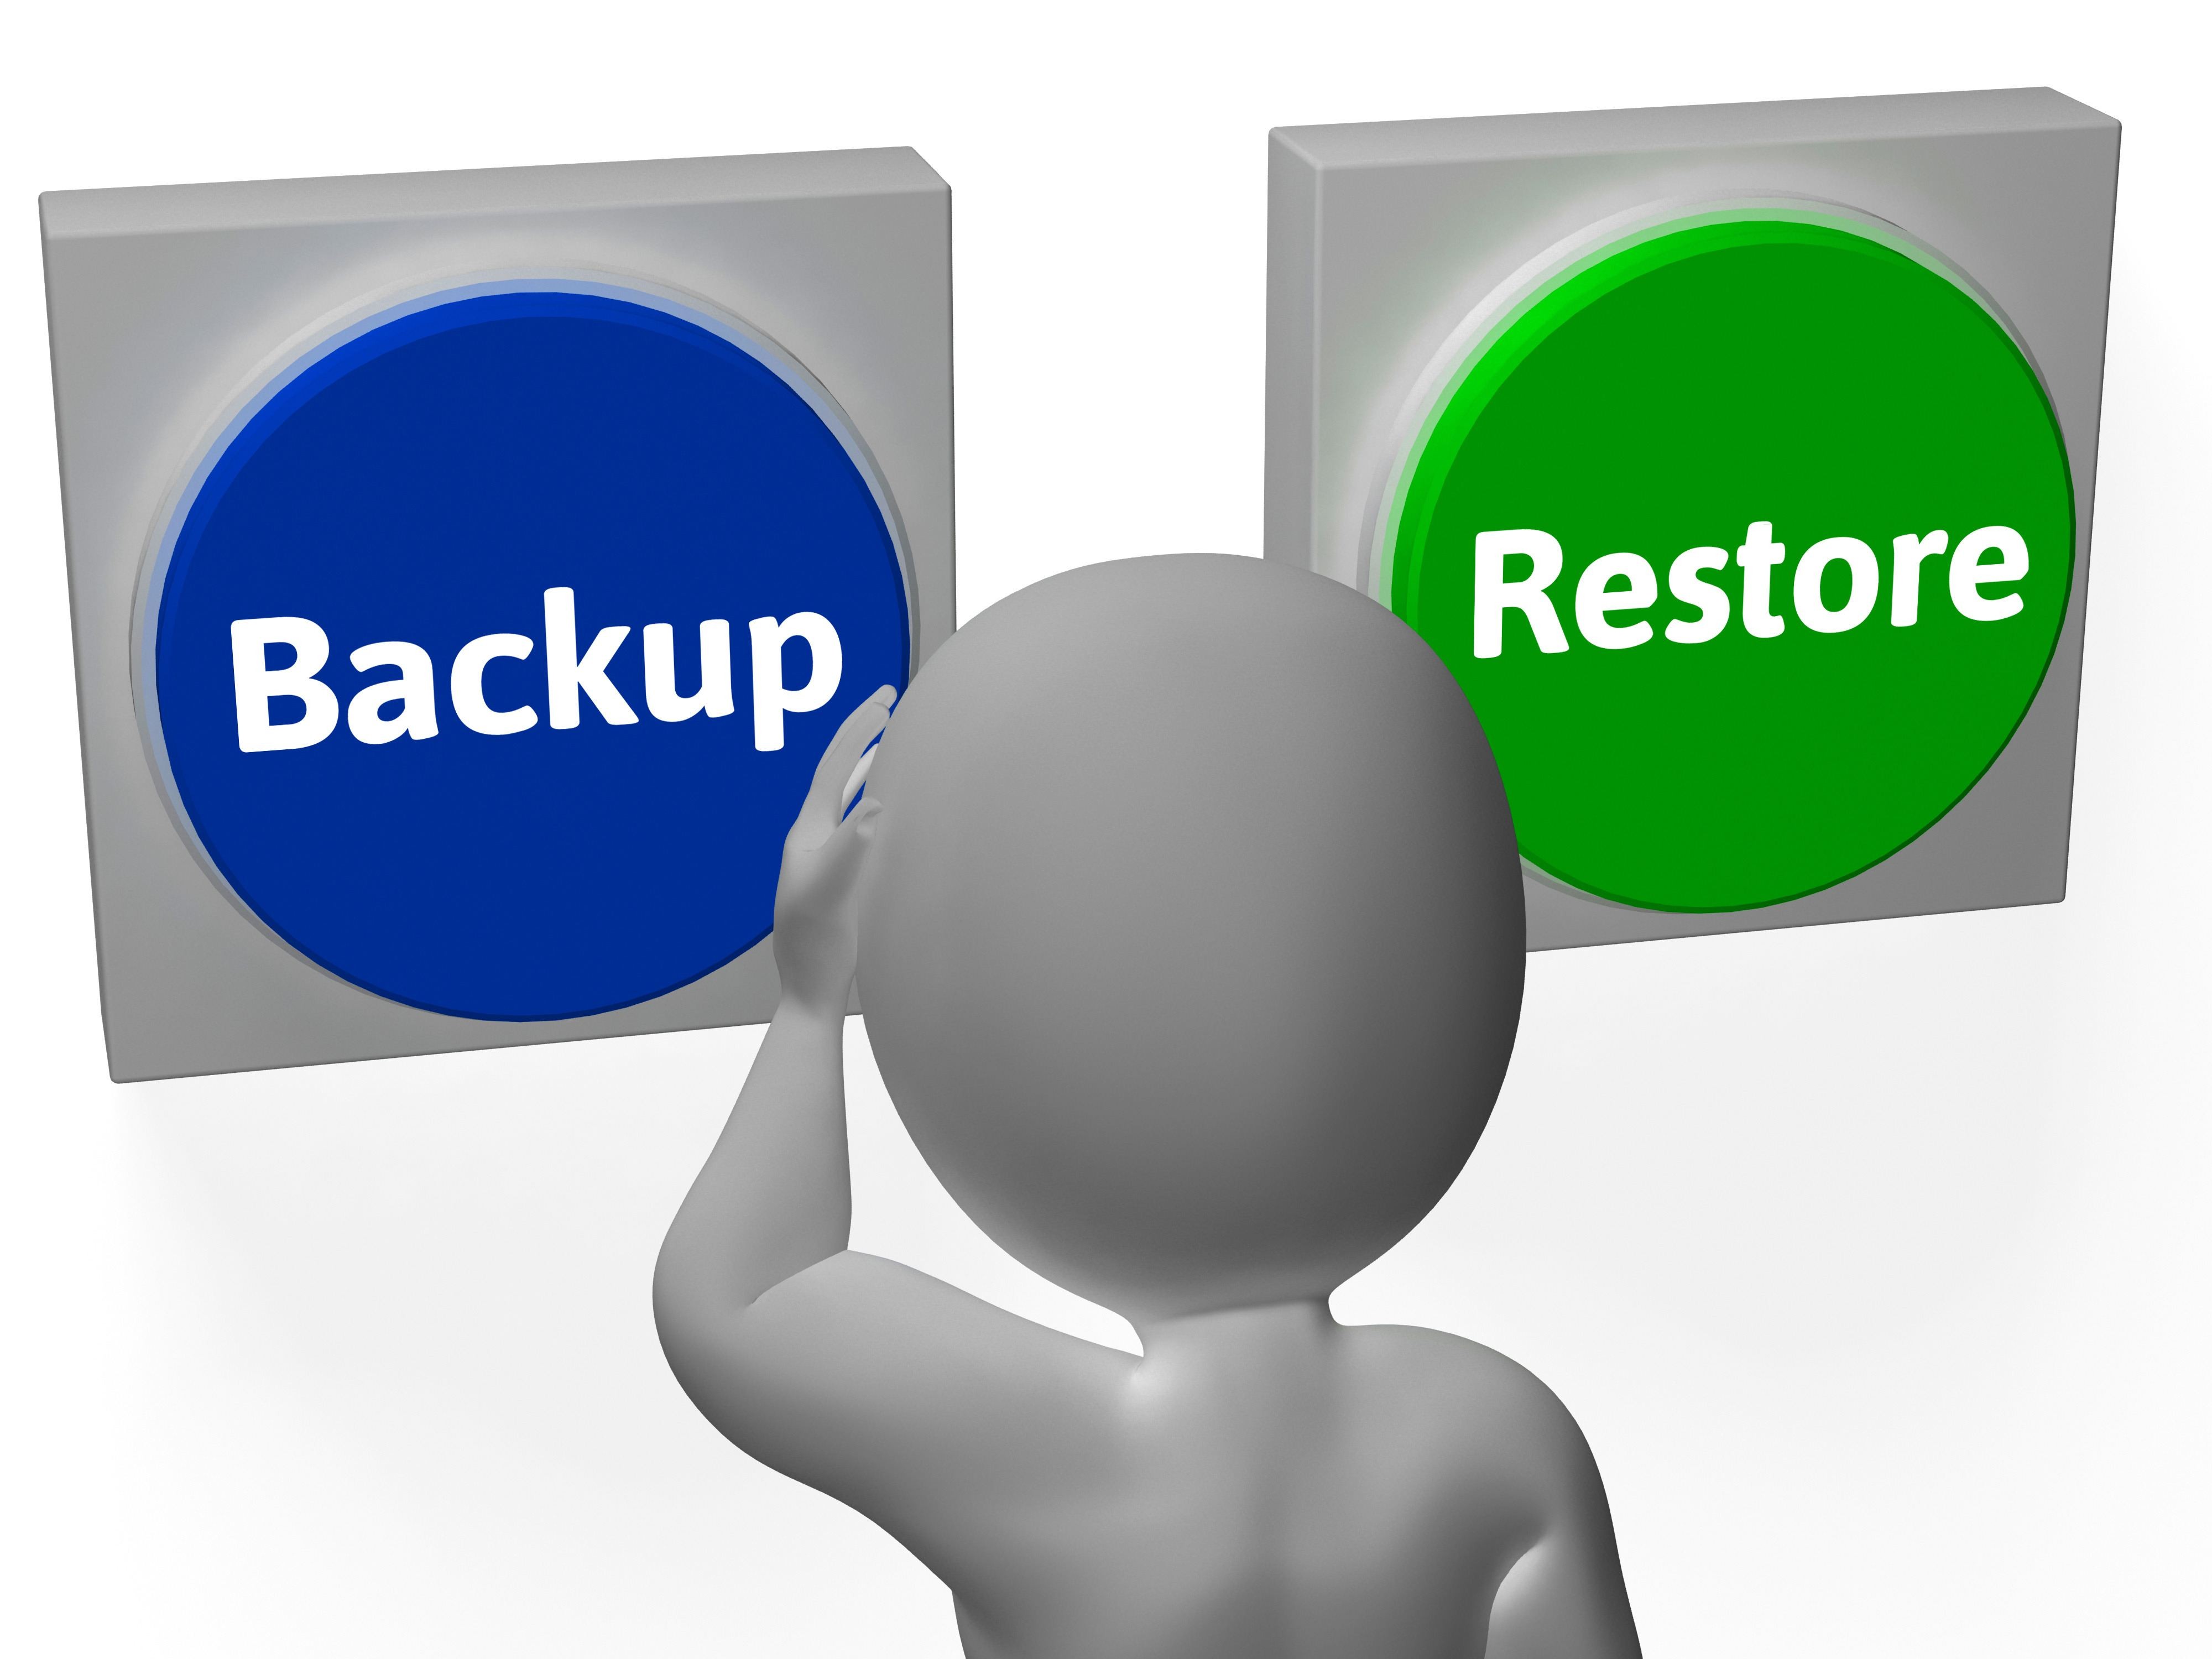 
Data Restore và Data Backup khác nhau như thế nào?
